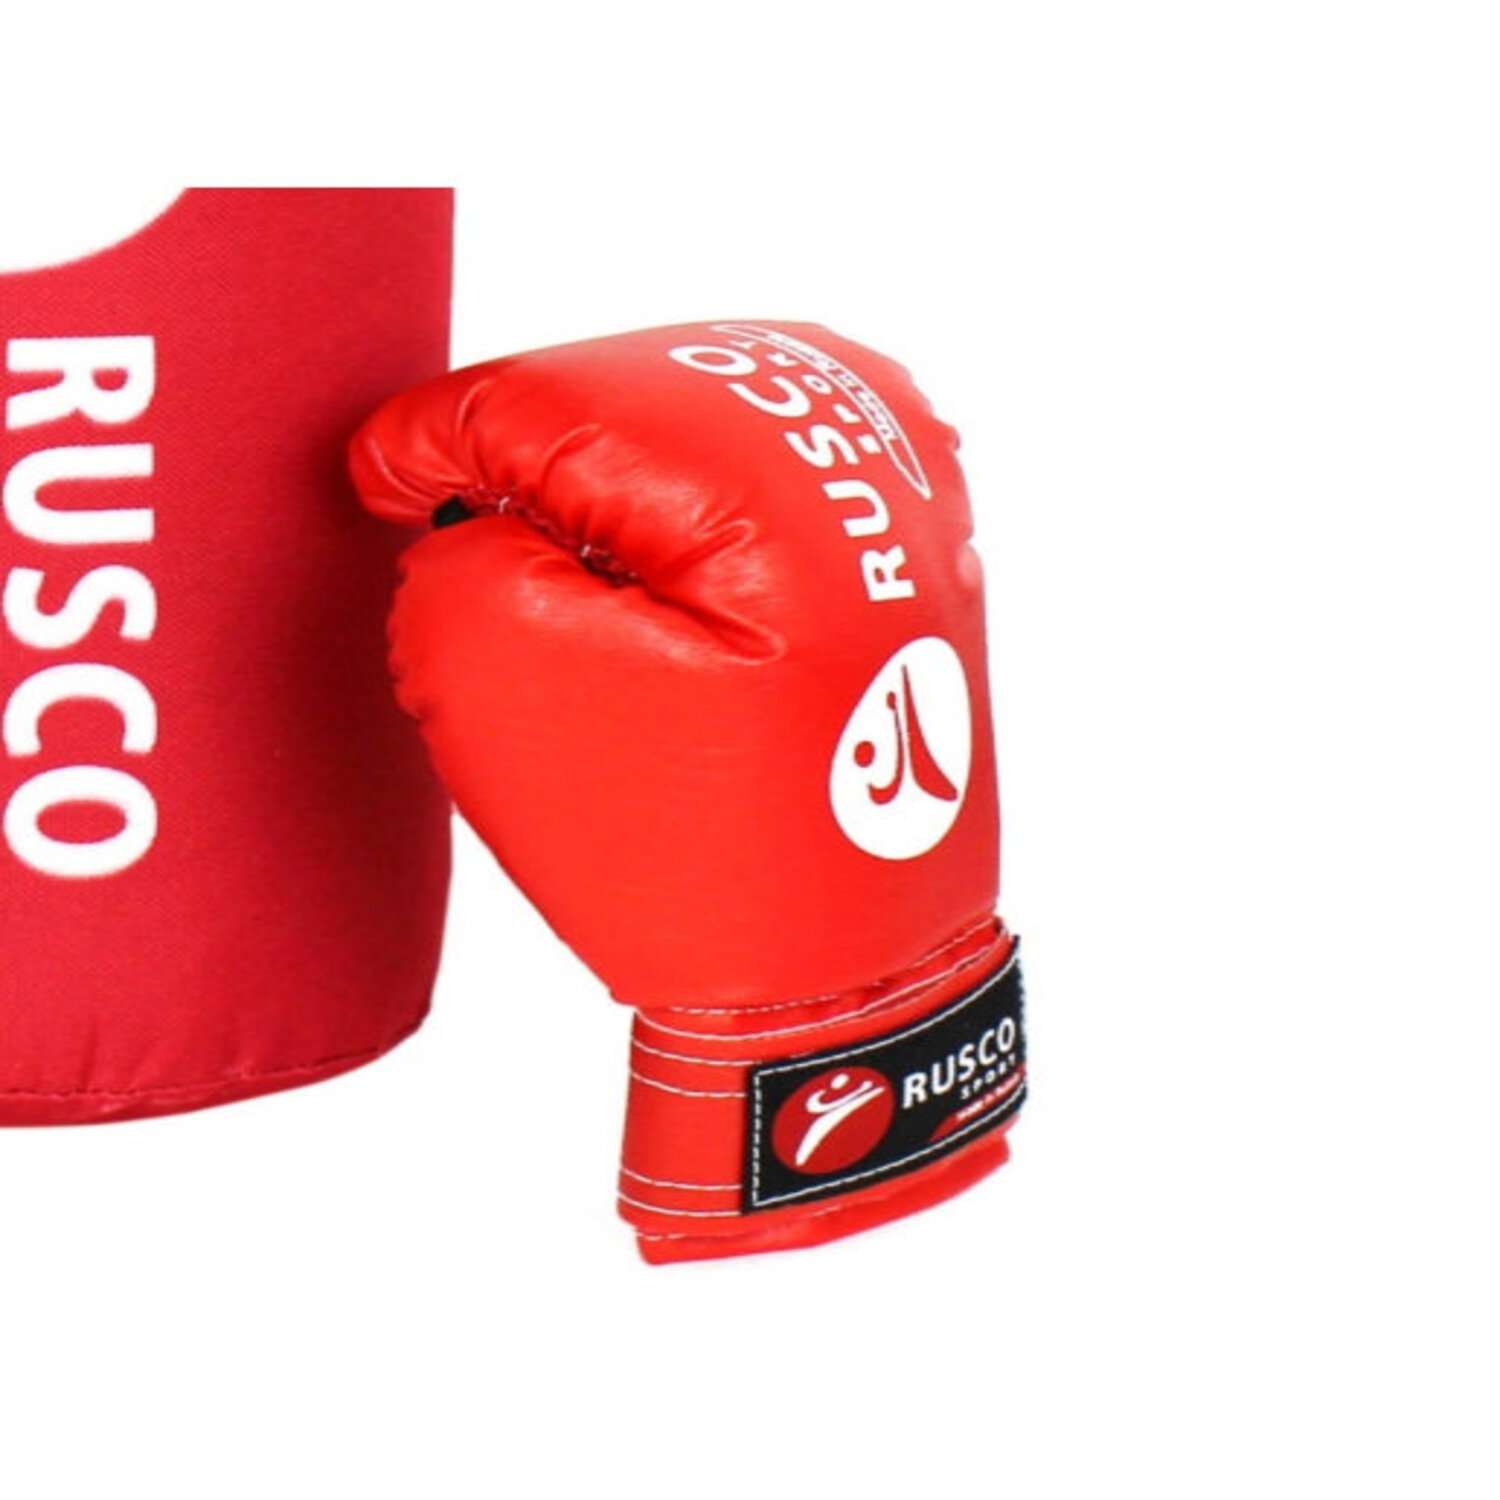 Набор для бокса RuscoSport красный 6OZ - фото 3